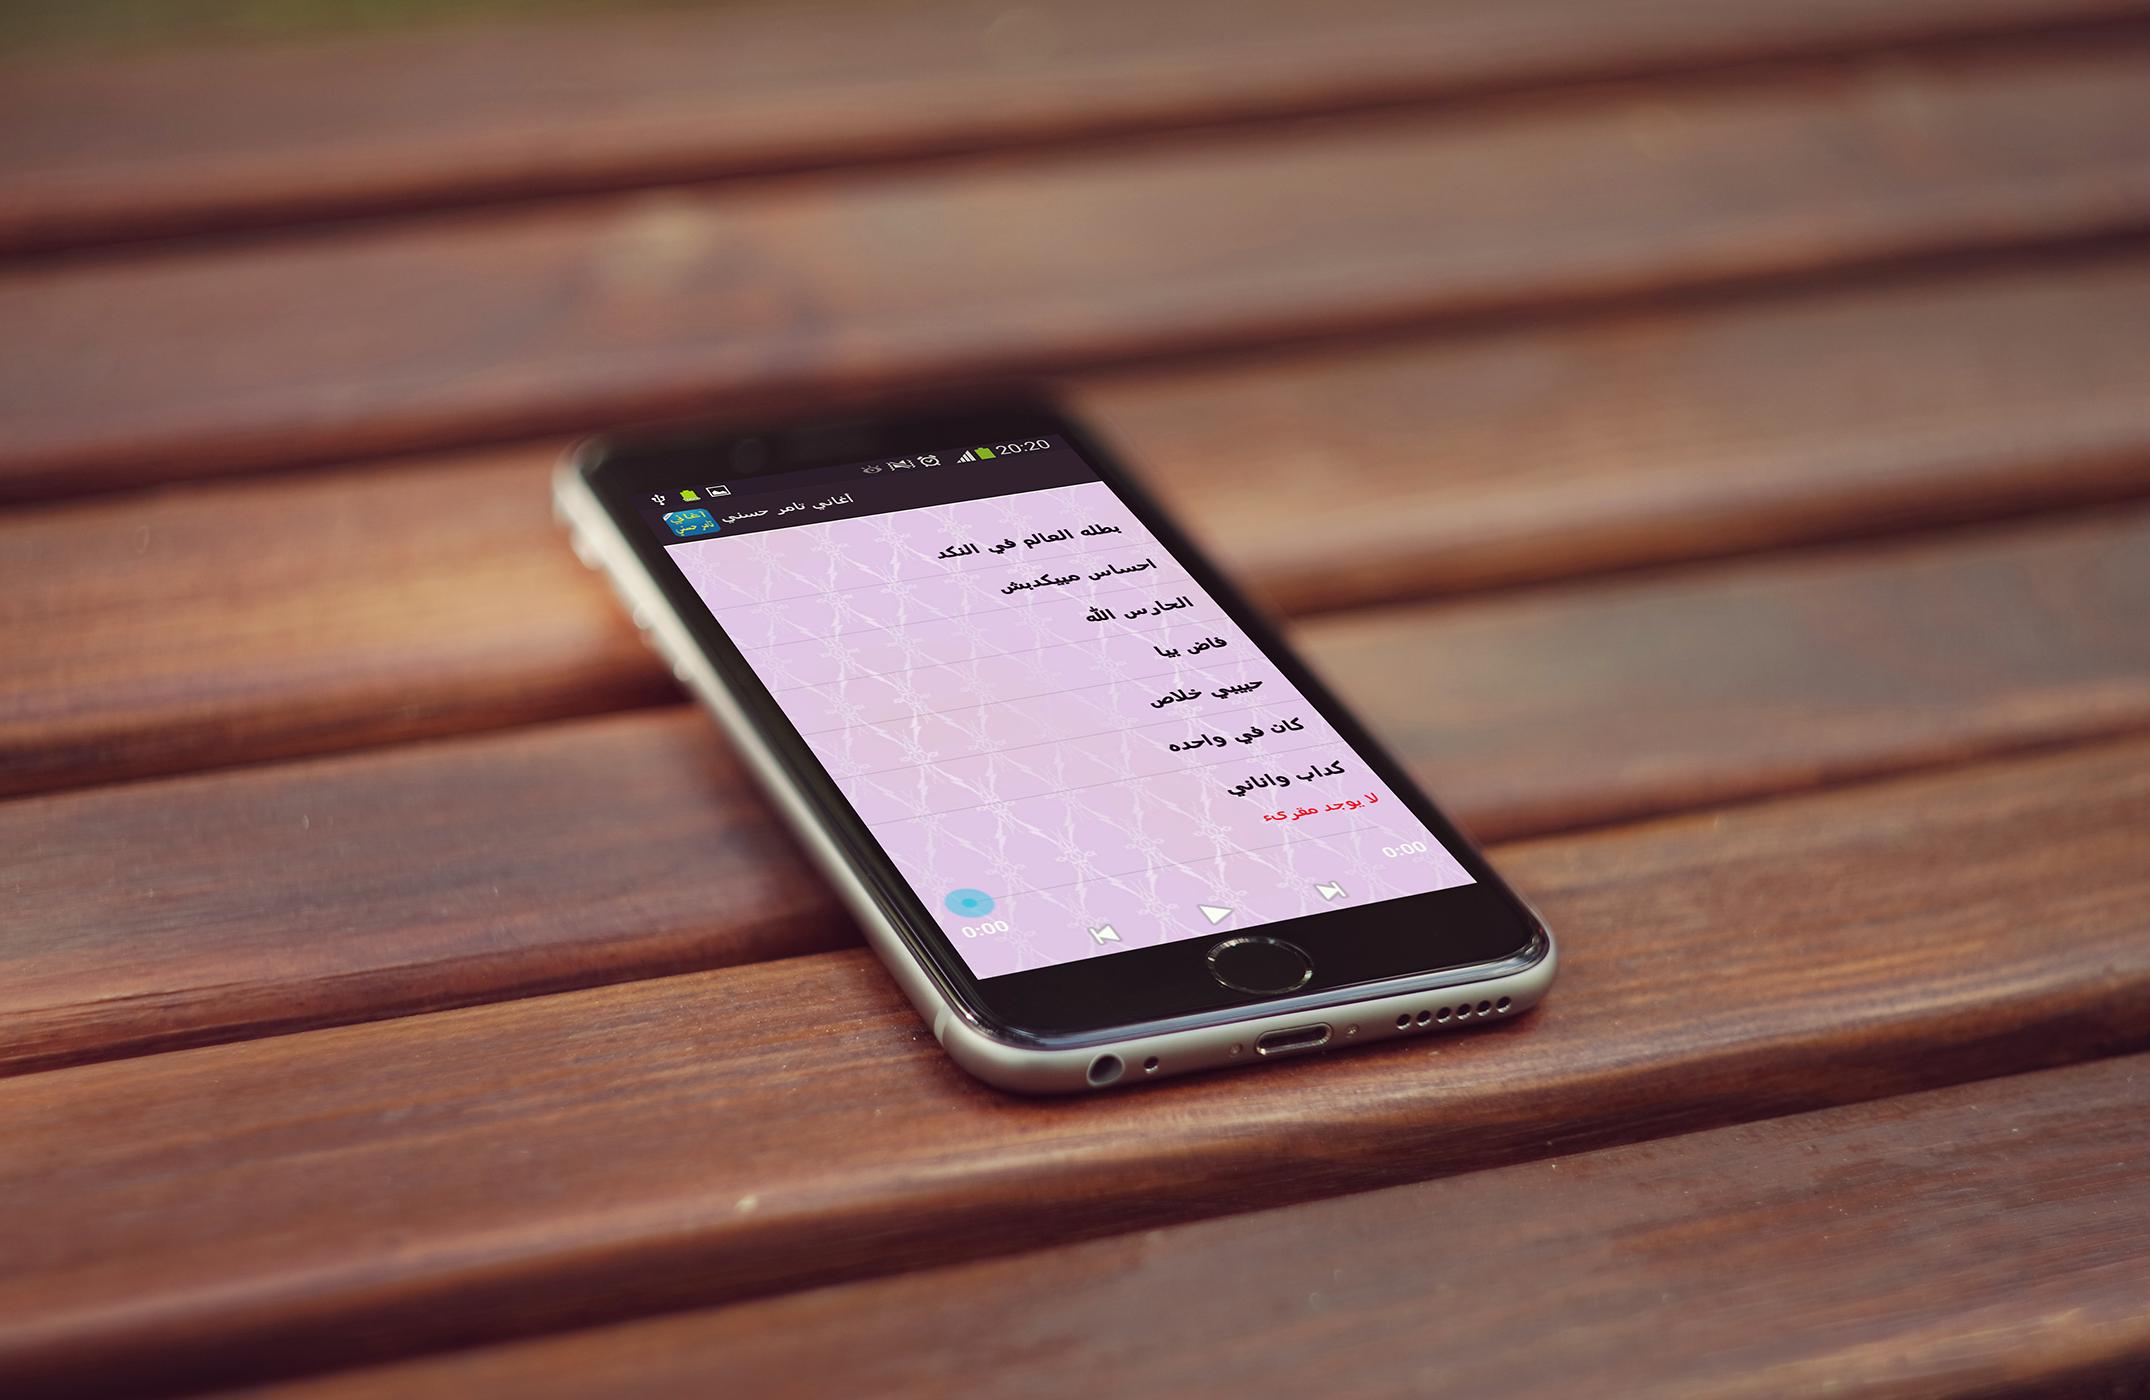 أغاني تامر حسني For Android Apk Download